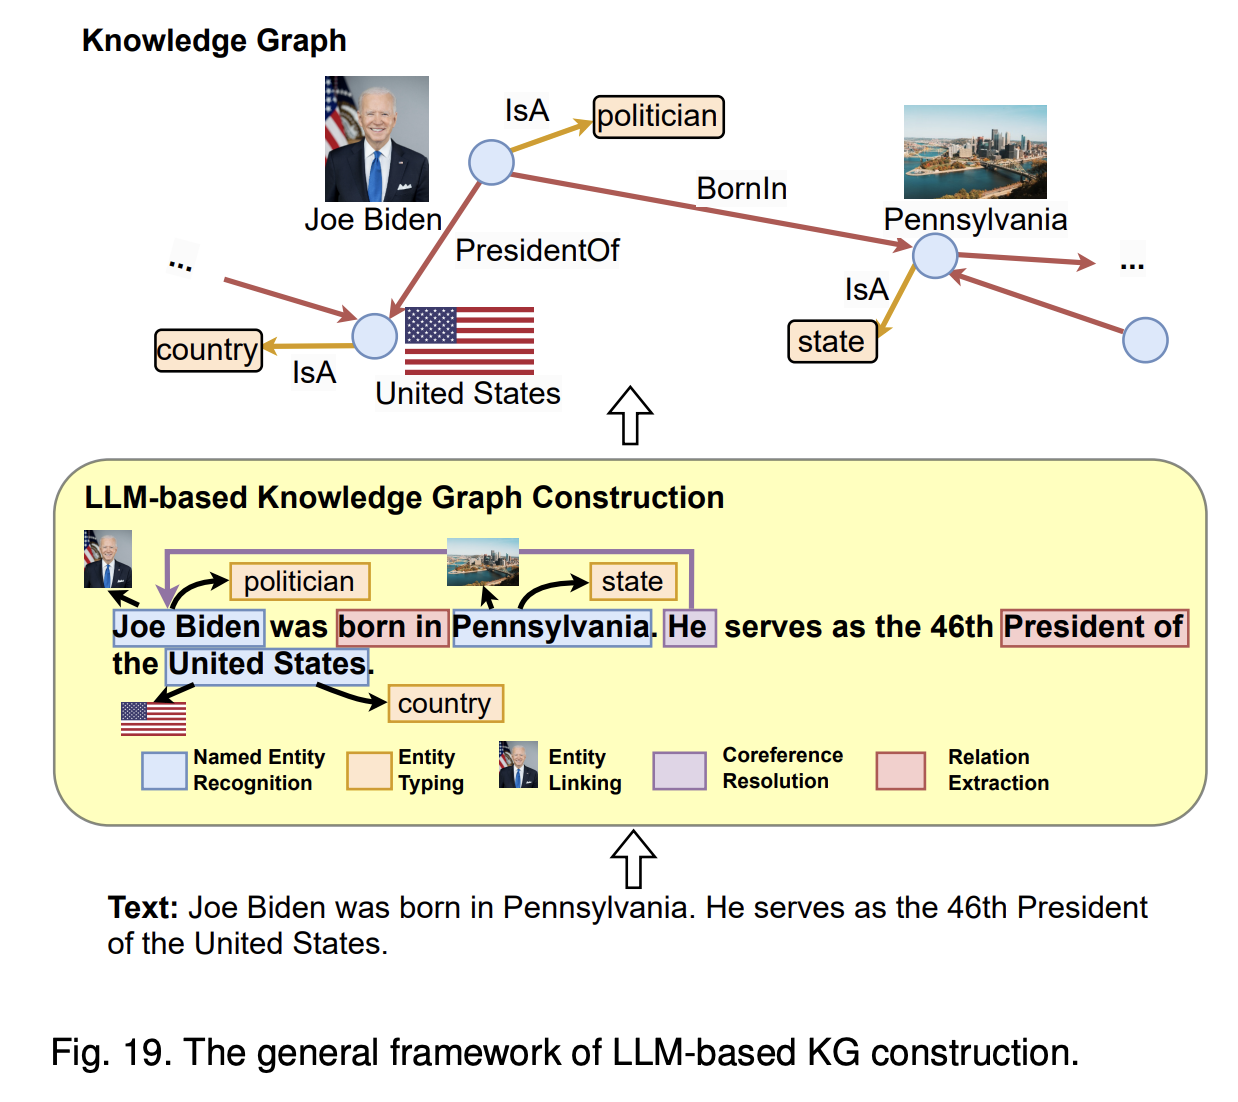 The general framework of LLM-based KG construction